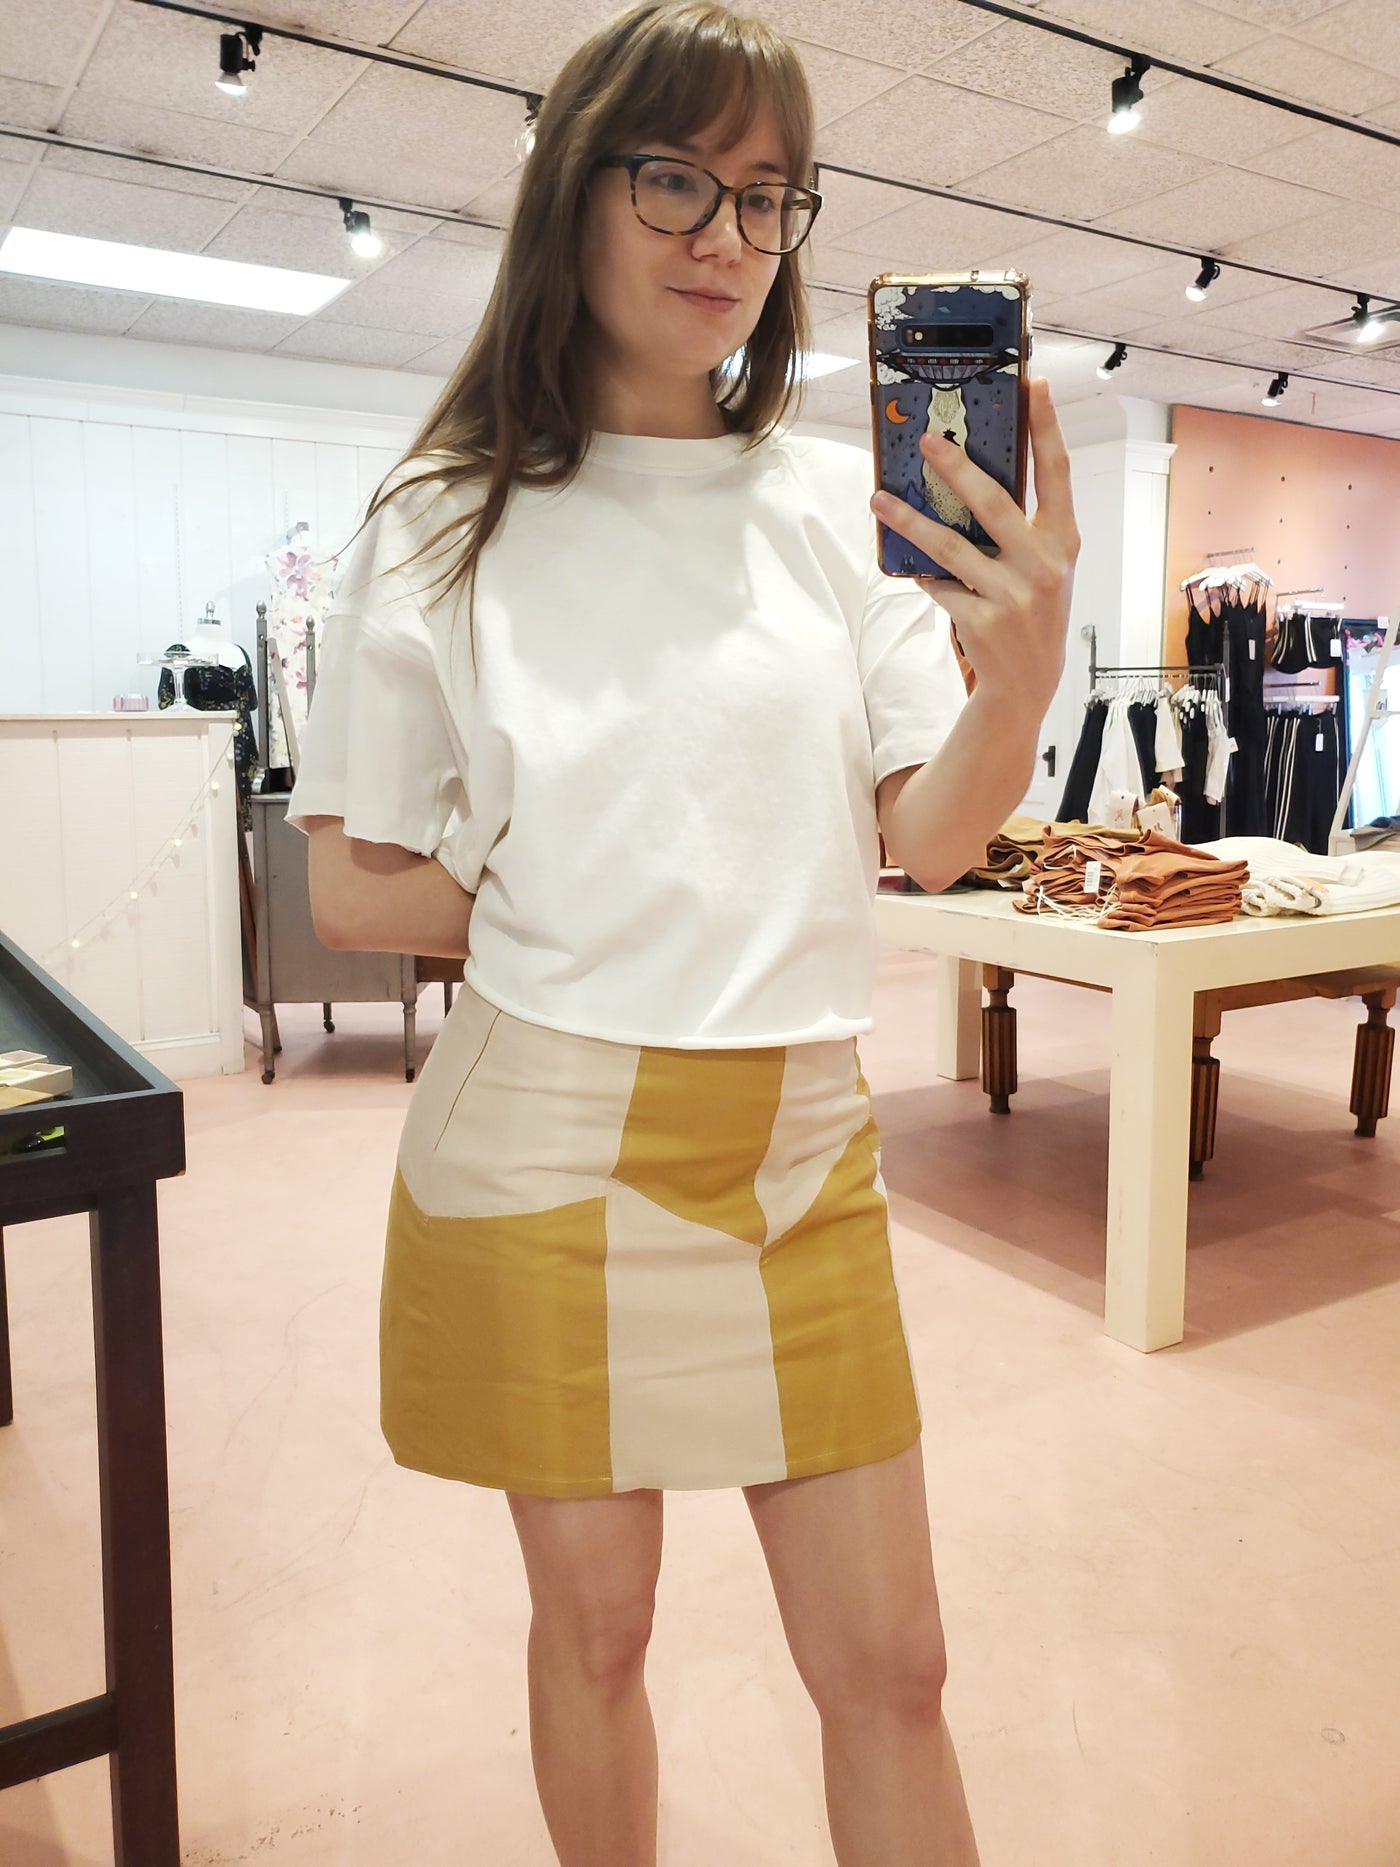 Le Crema Mini Skirt